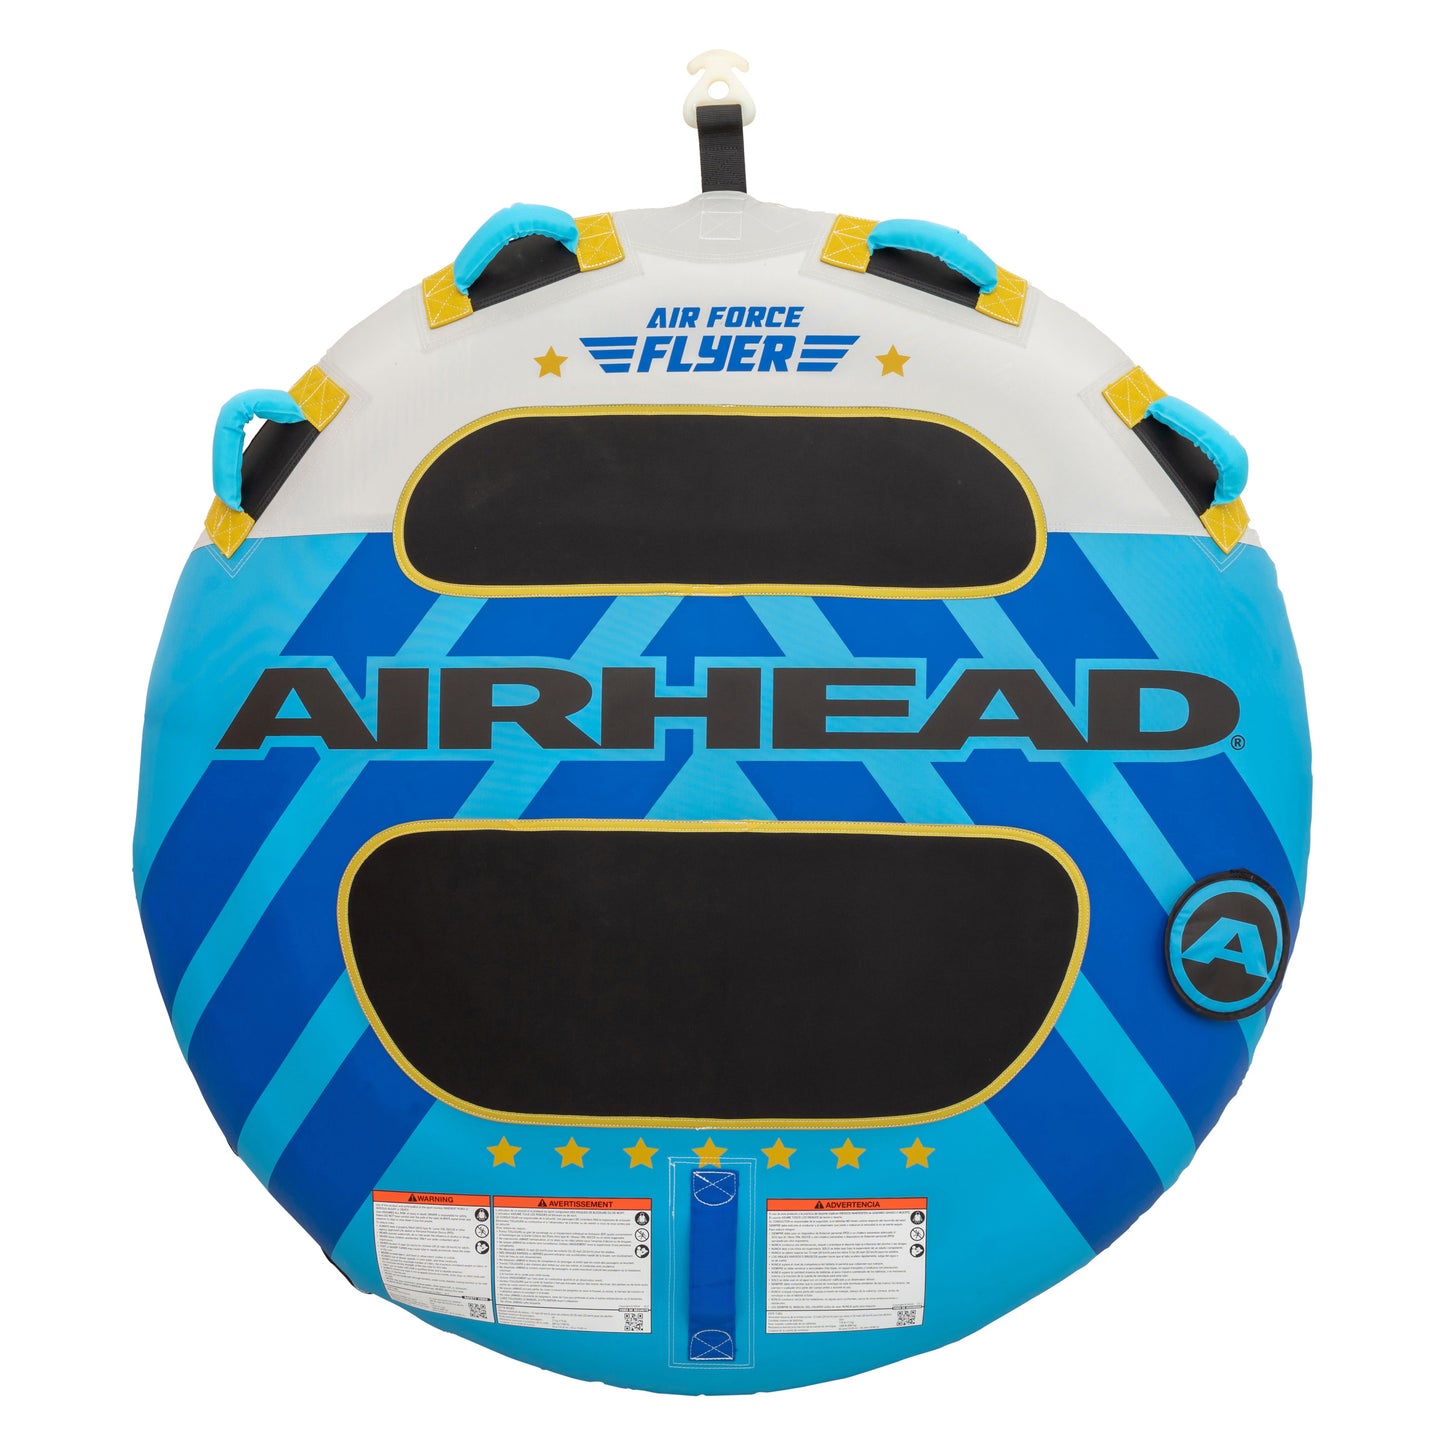 AIRHEAD - AHFL-1646D: AIRHEAD AIR FORCE FLYER  1 RIDER